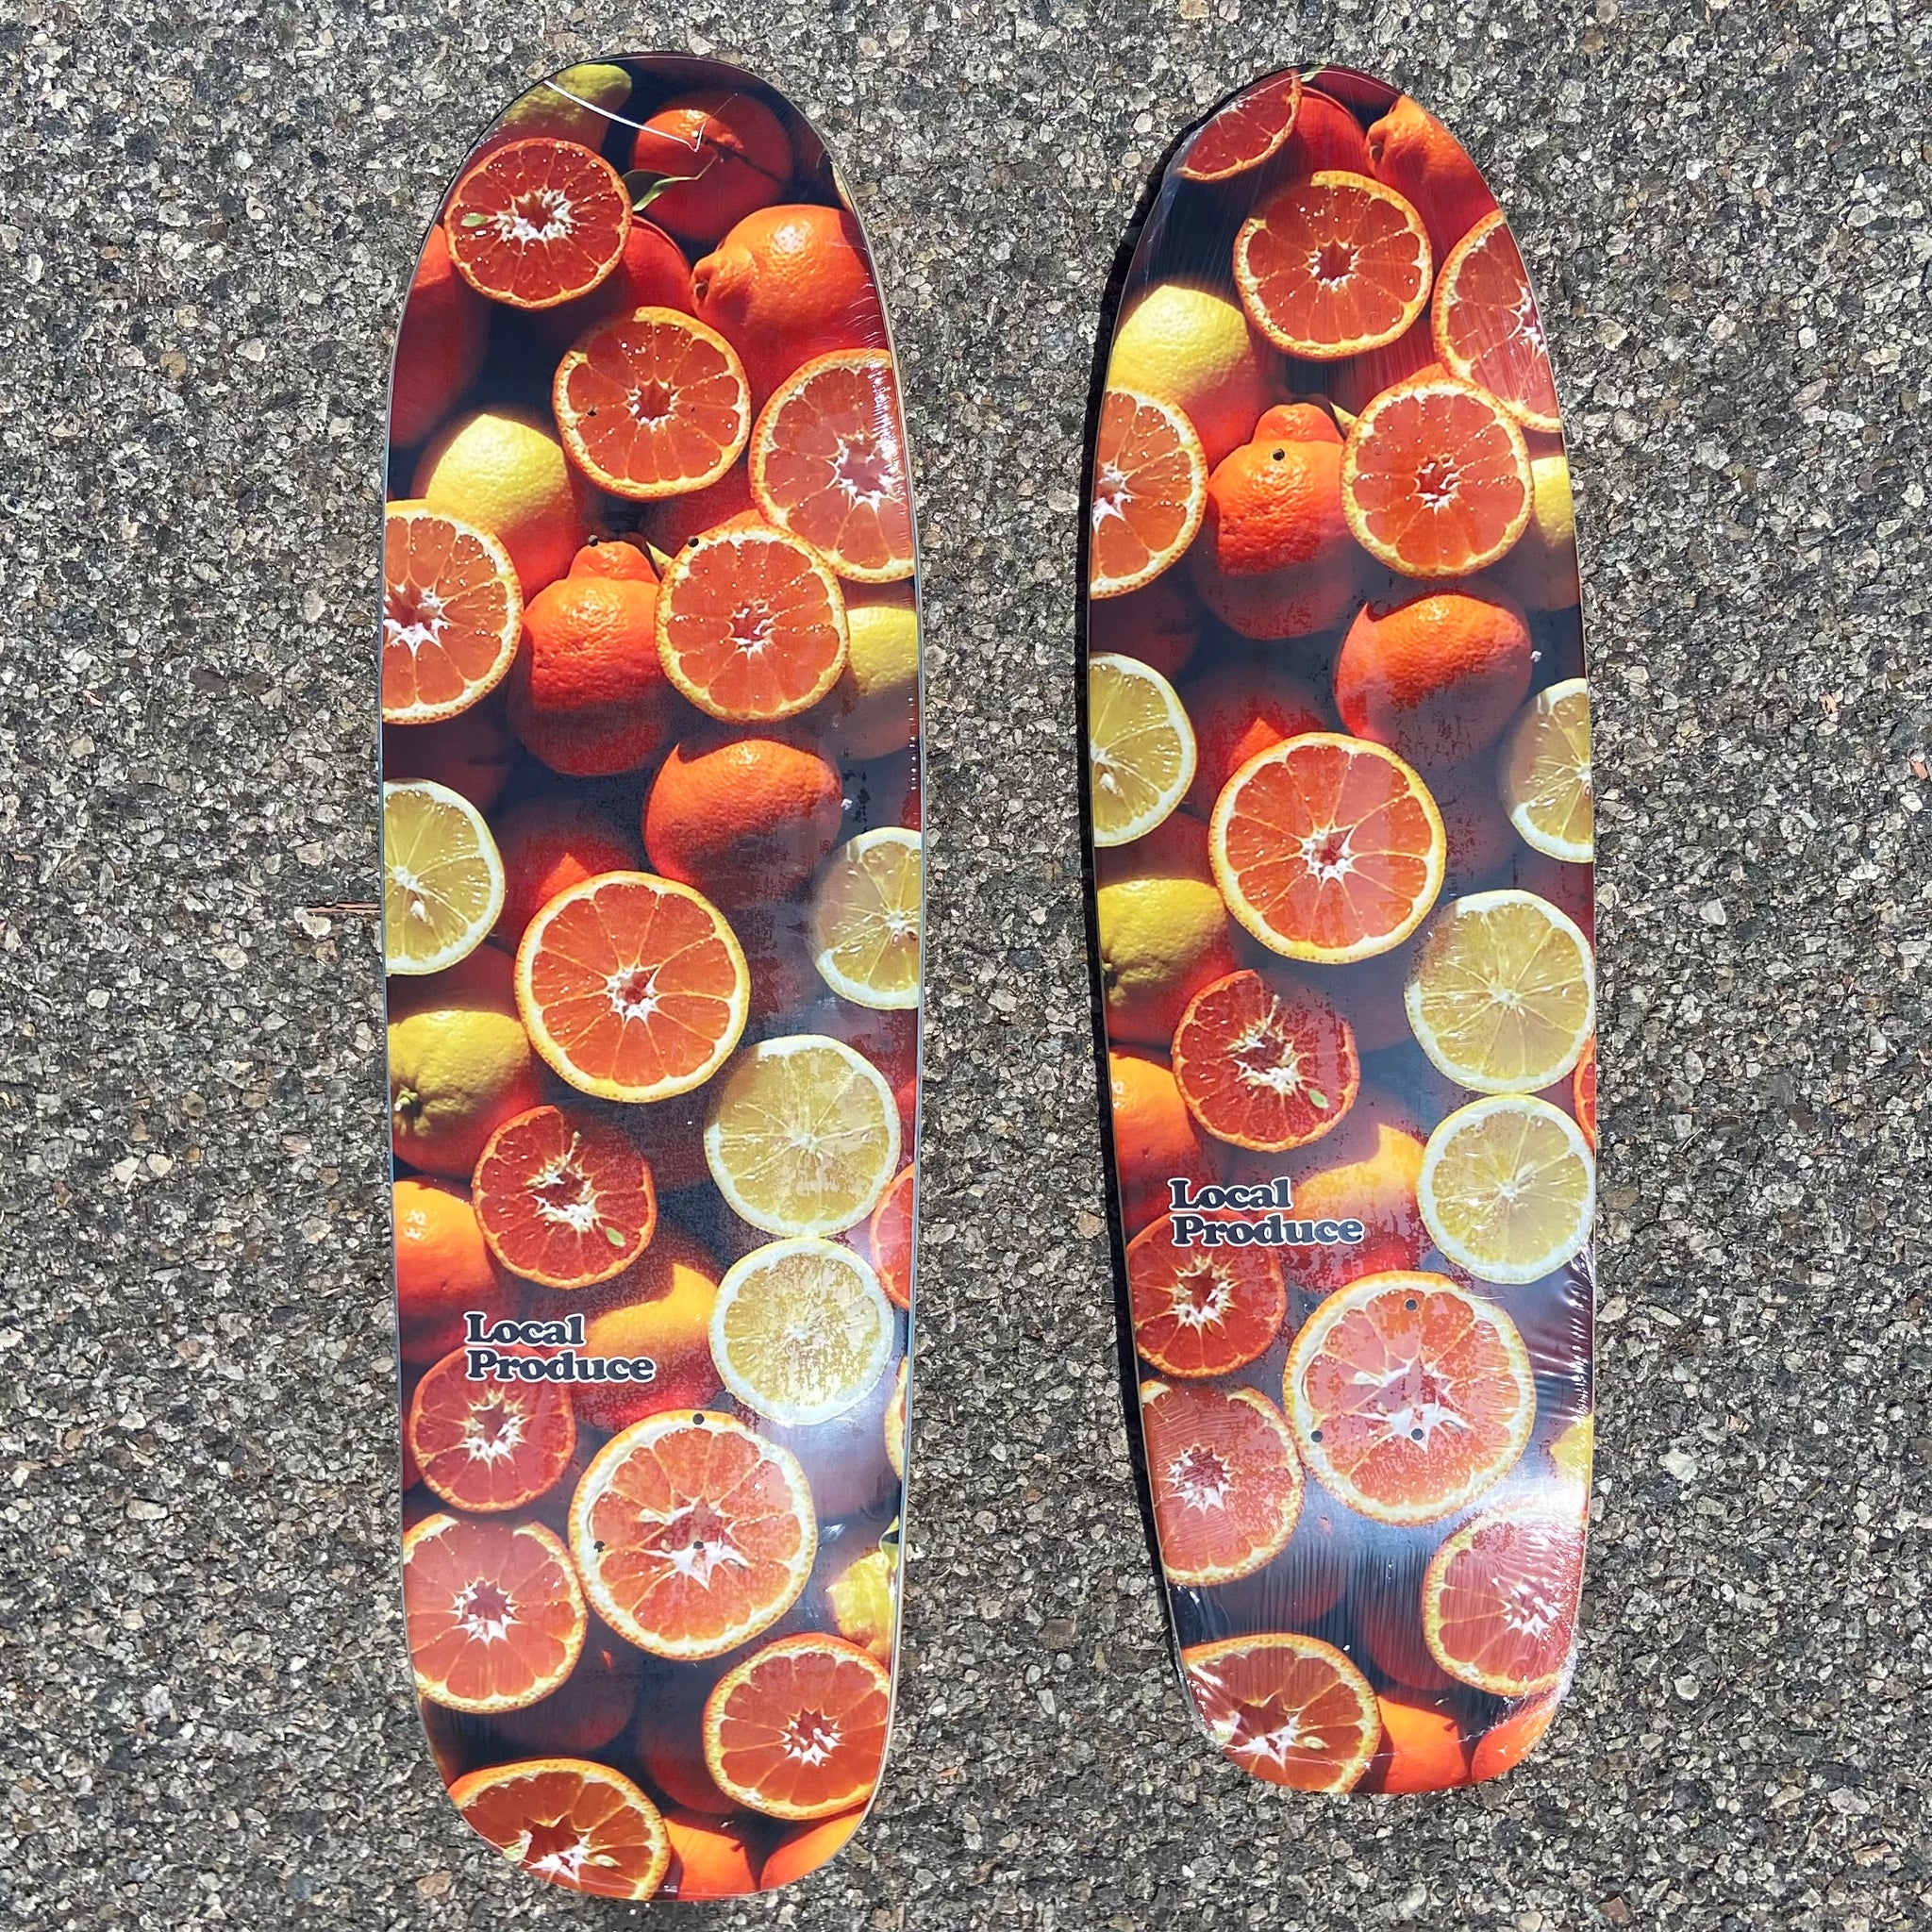 Local Produce Citrus decks